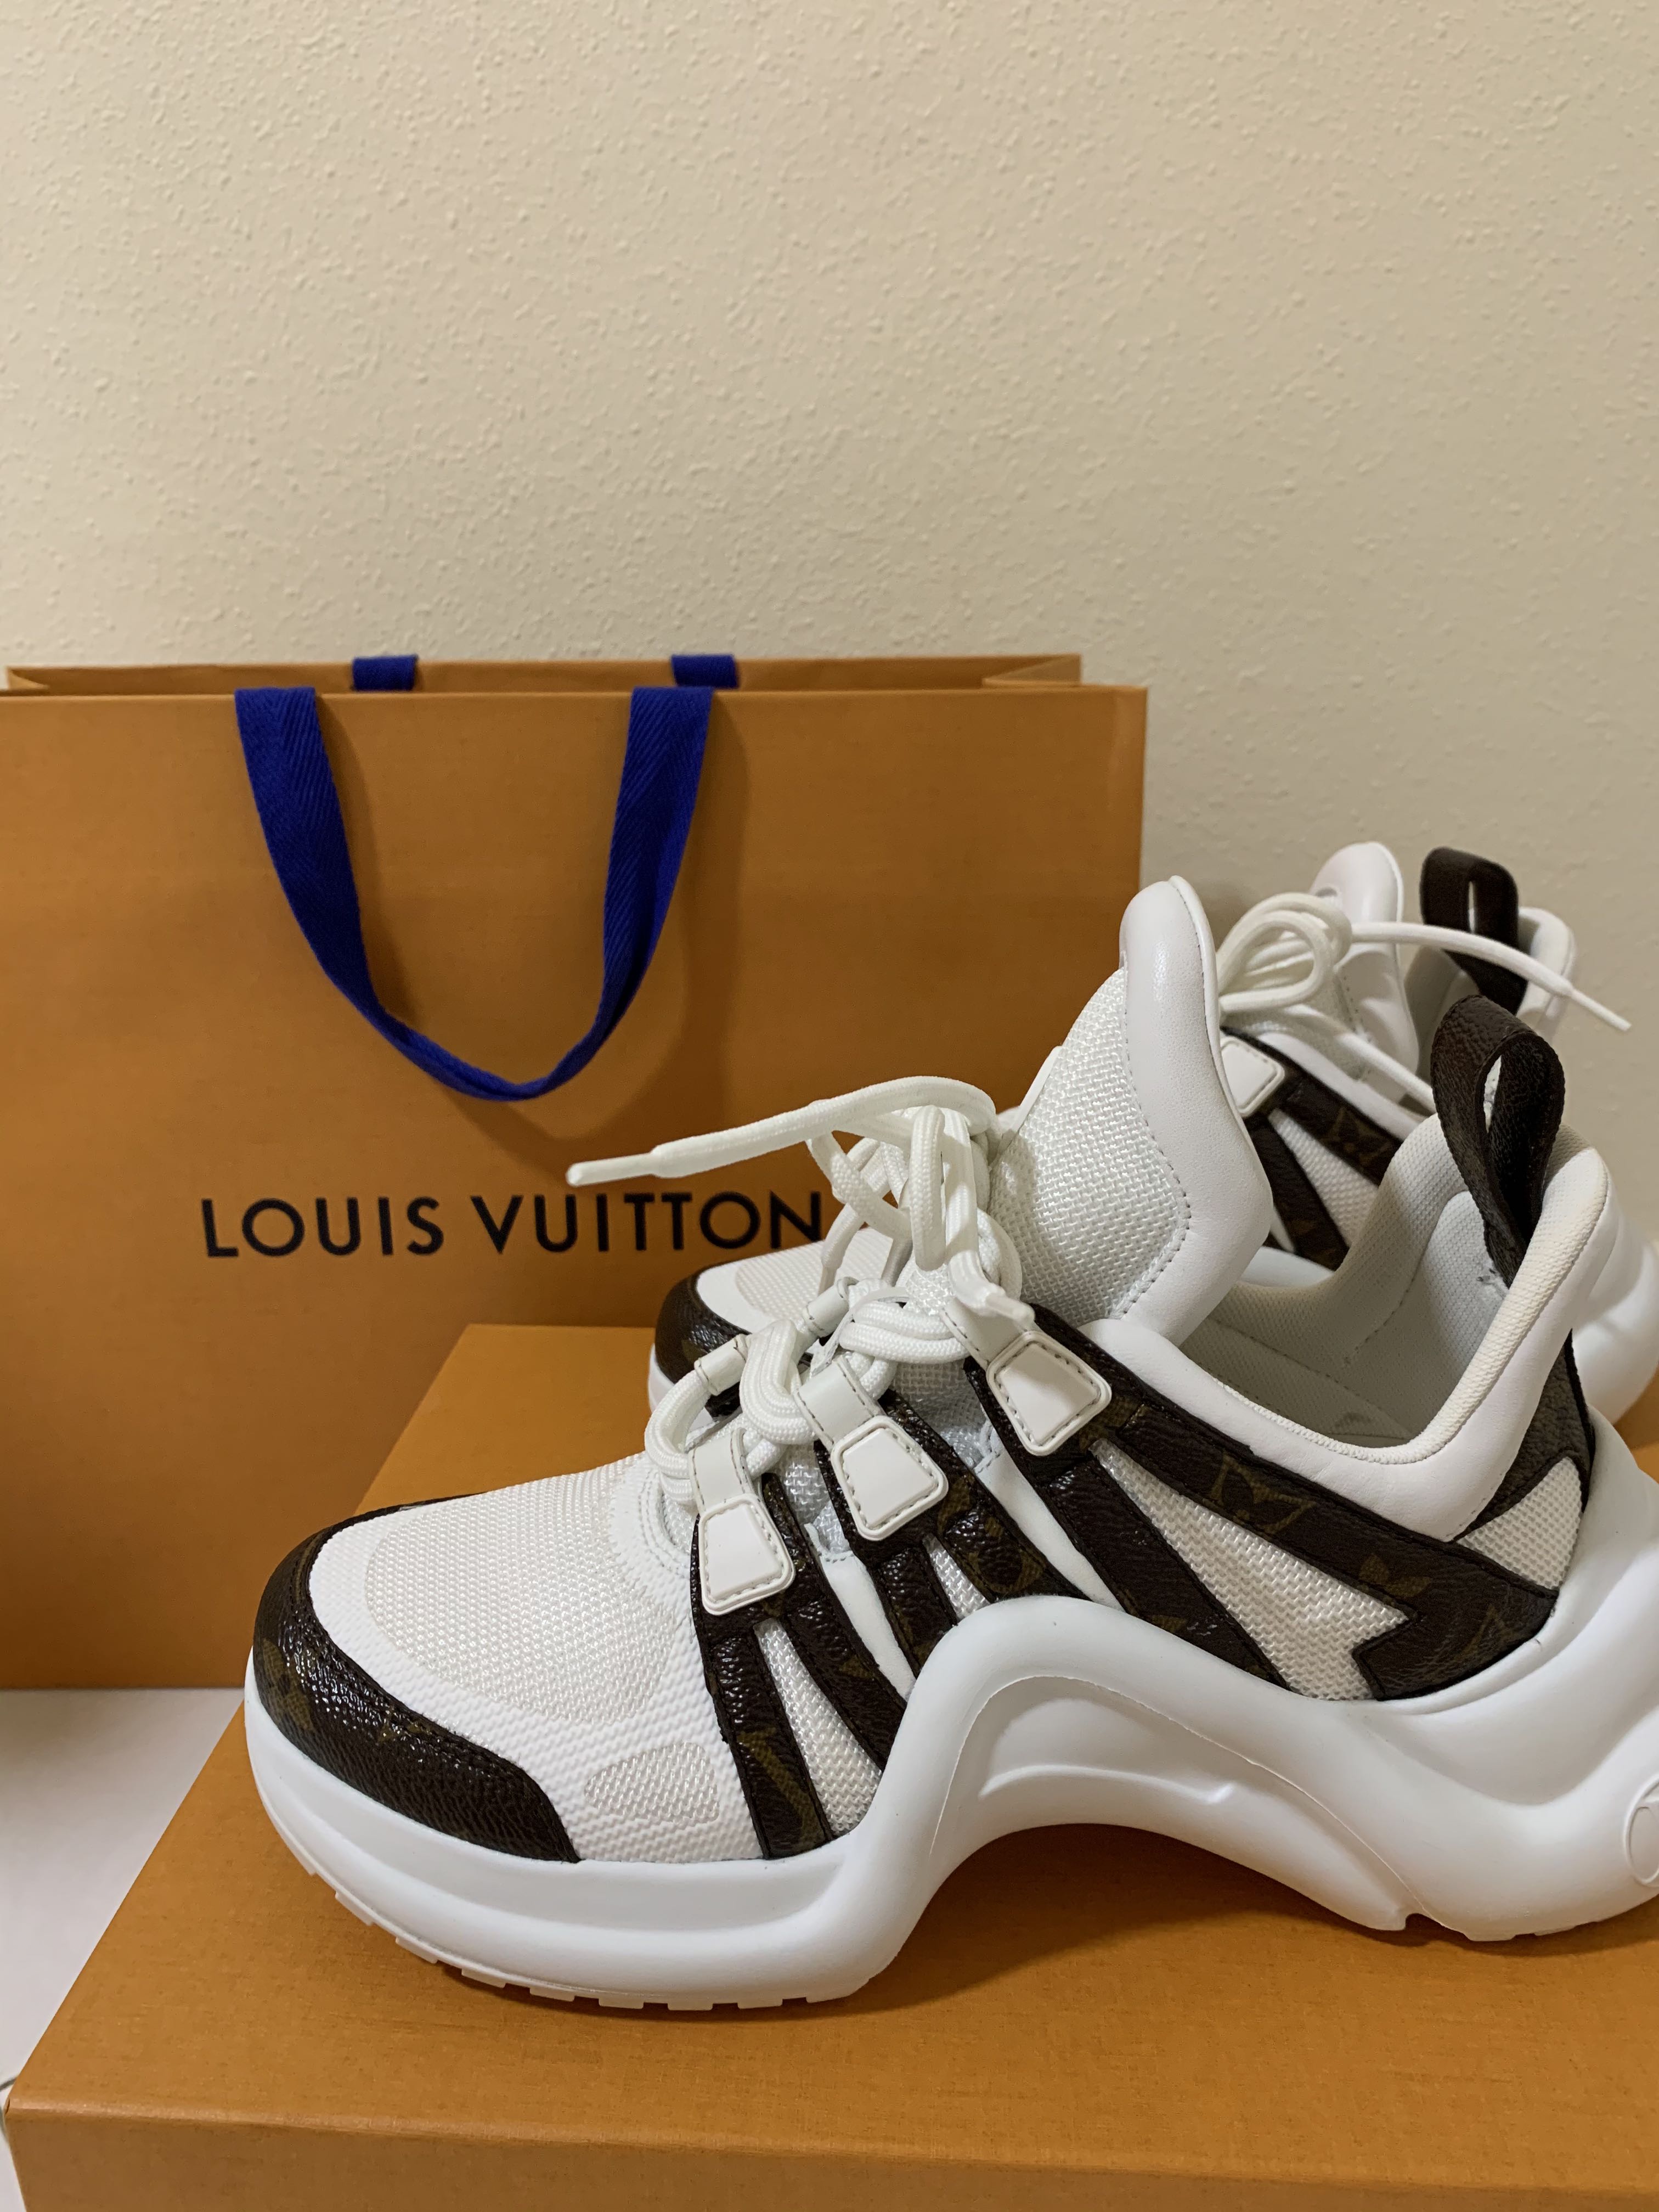 Louis Vuitton, Shoes, Authentic Louis Vuitton Lv Archlight Line Leather  Sneakers